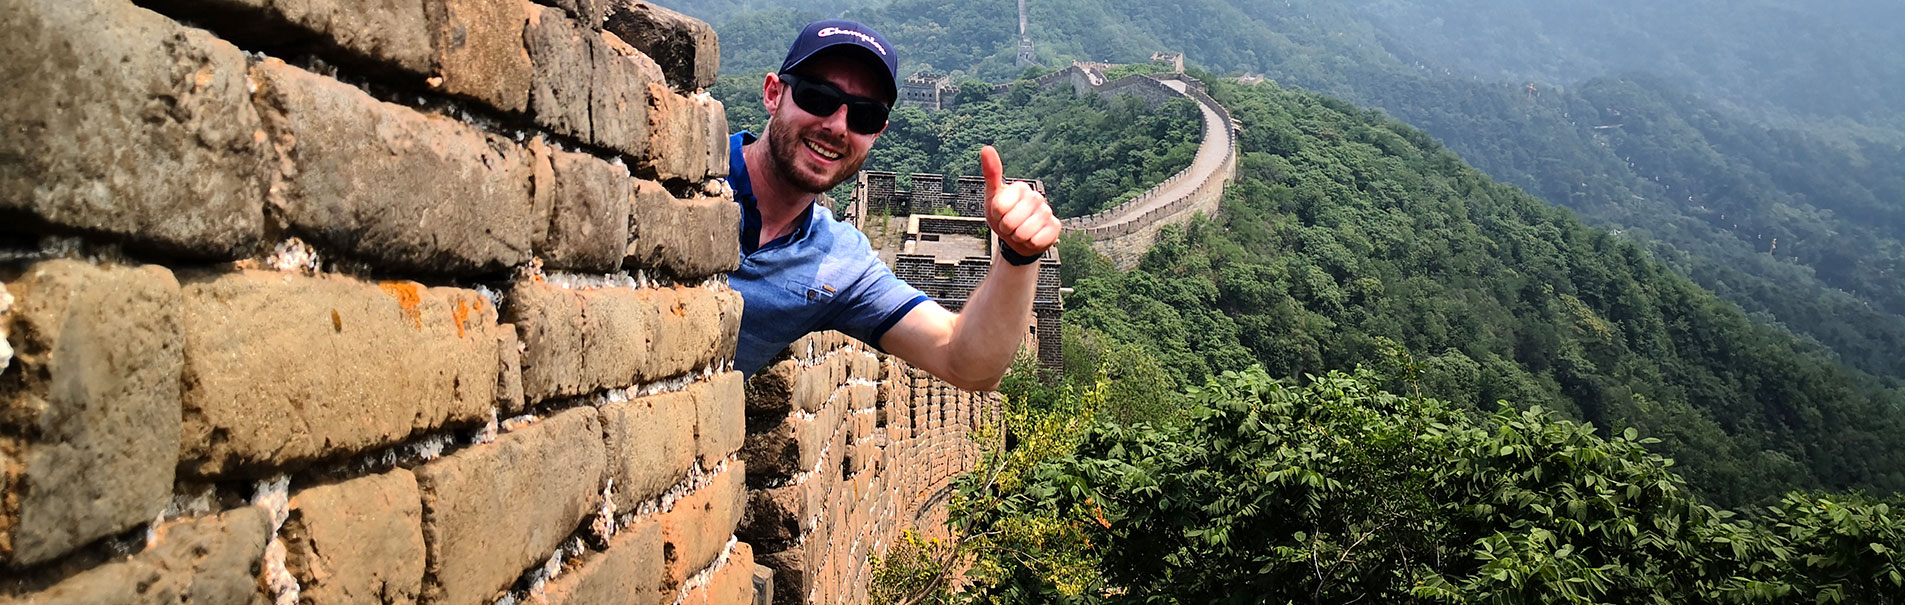 Great Wall, Beijing